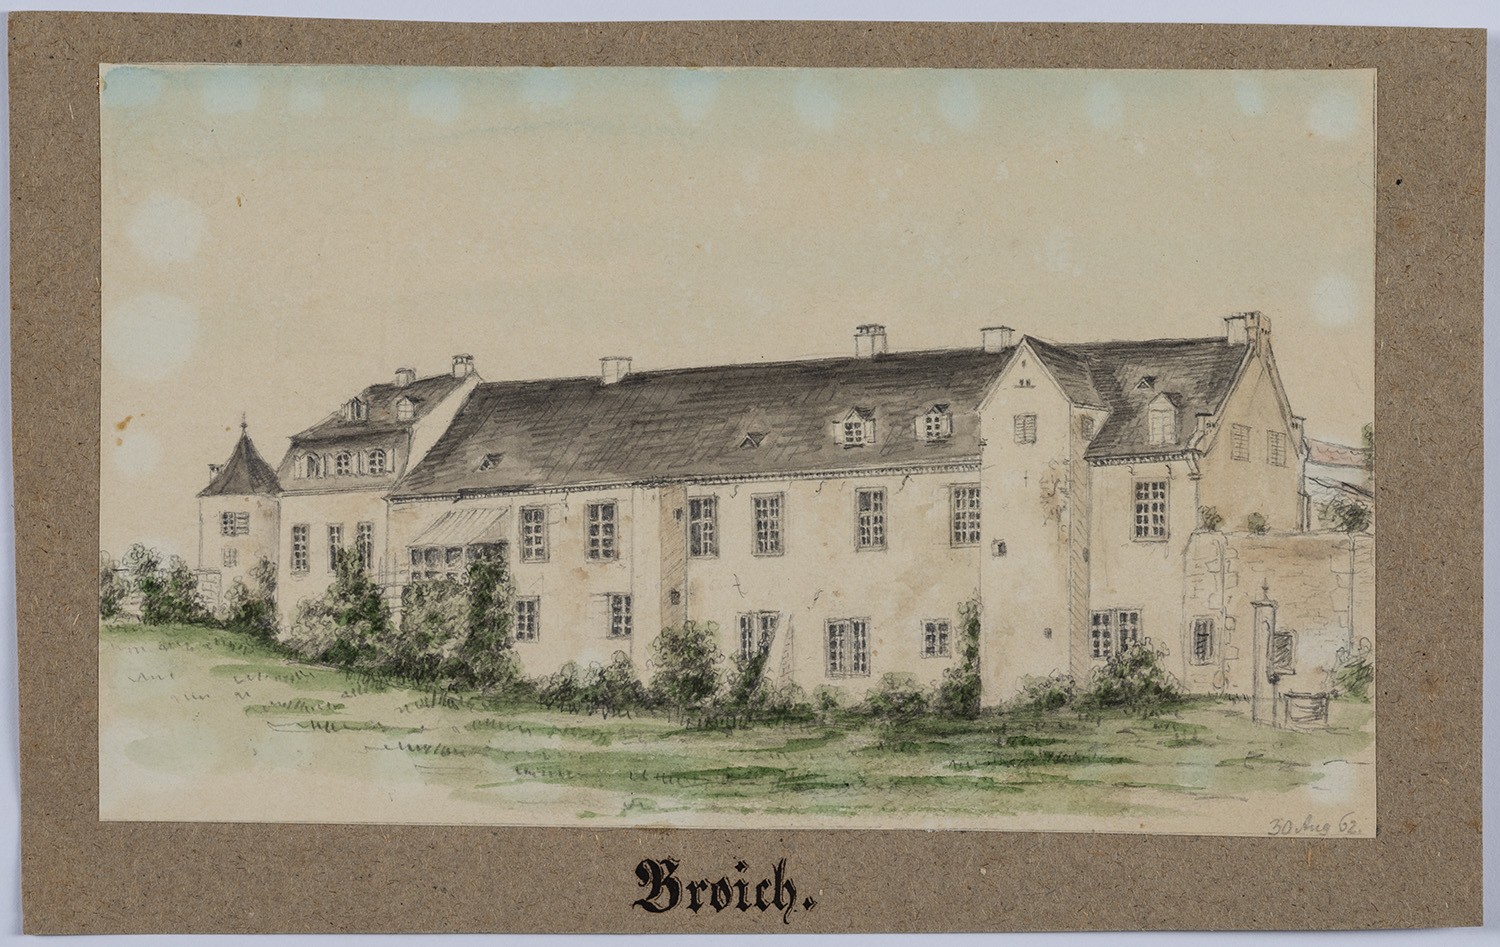 Broich (Stadt Mülheim an der Ruhr, Nordrhein-Westfalen): Schloss (Landesgeschichtliche Vereinigung für die Mark Brandenburg e.V., Archiv CC BY)